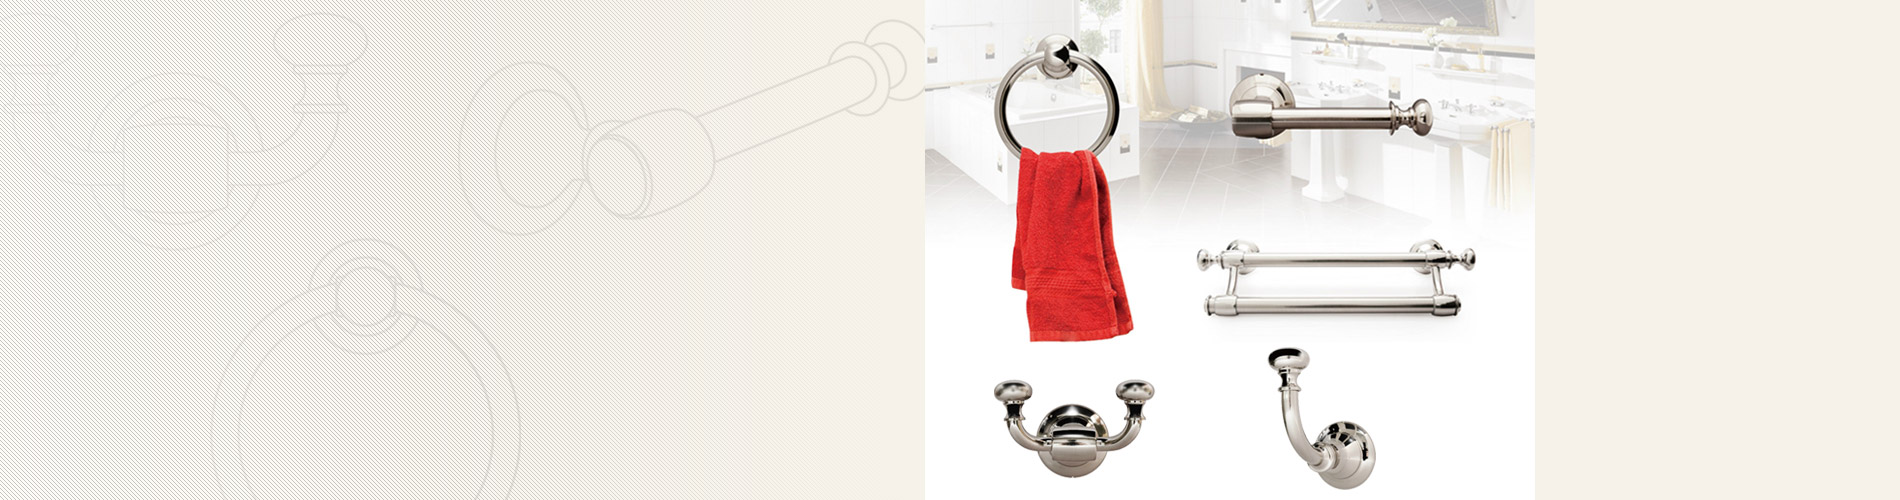 Hardware de baño Nuestros accesorios de baño contienen toallero simple/doble, toallero, porta pañuelos y ganchos para prendas.